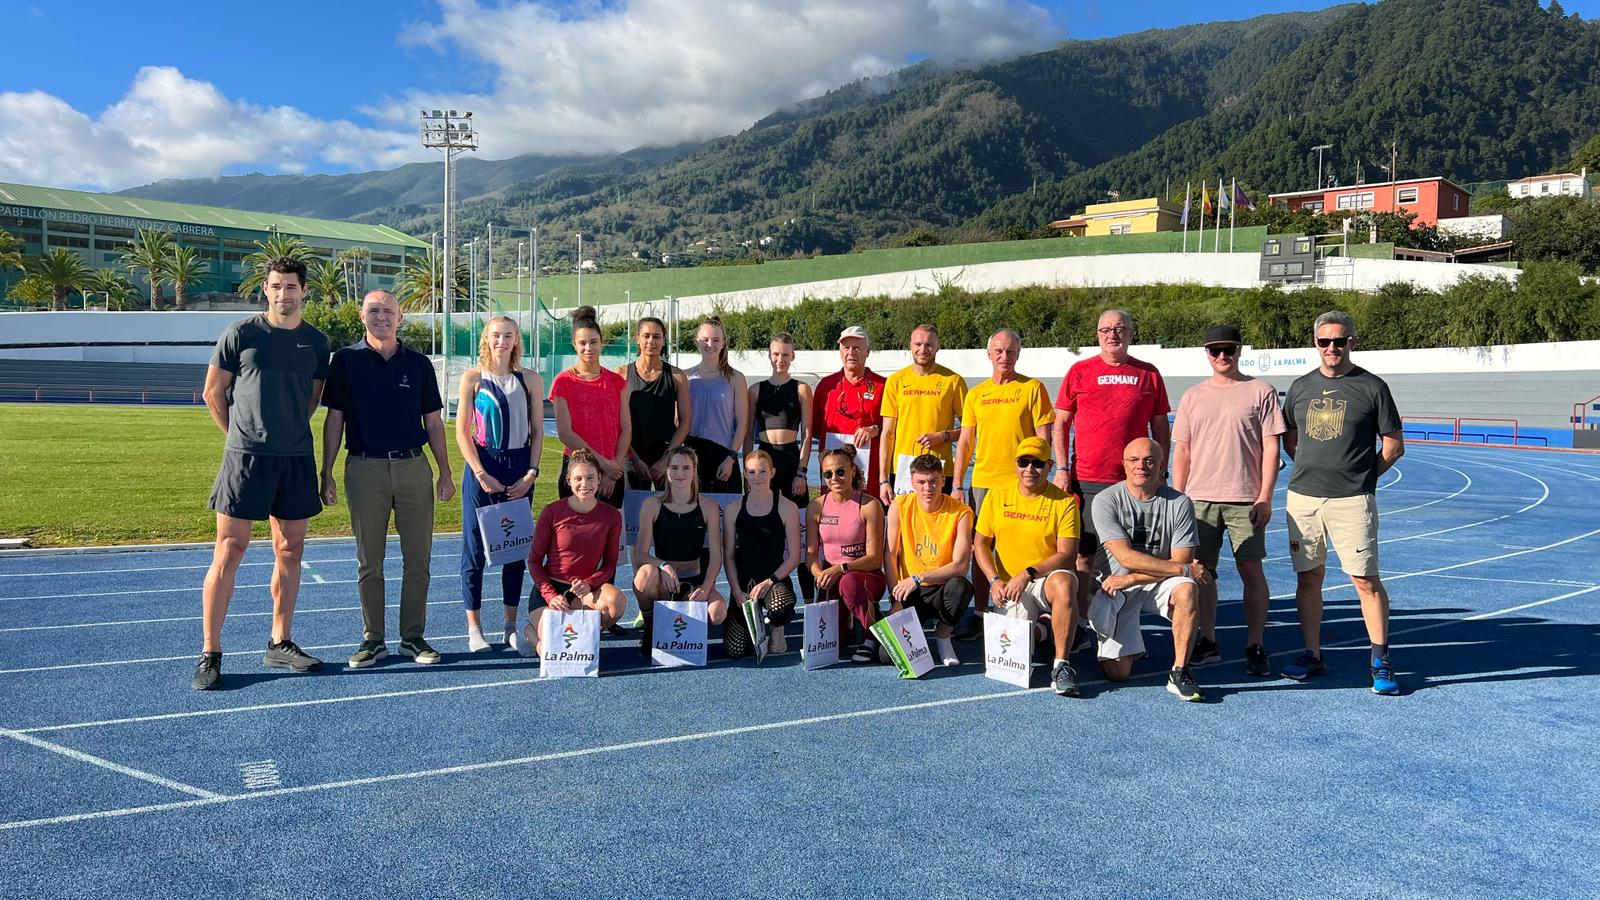 La selección olímpica alemana vuelve a elegir La Palma como destino de entrenamiento